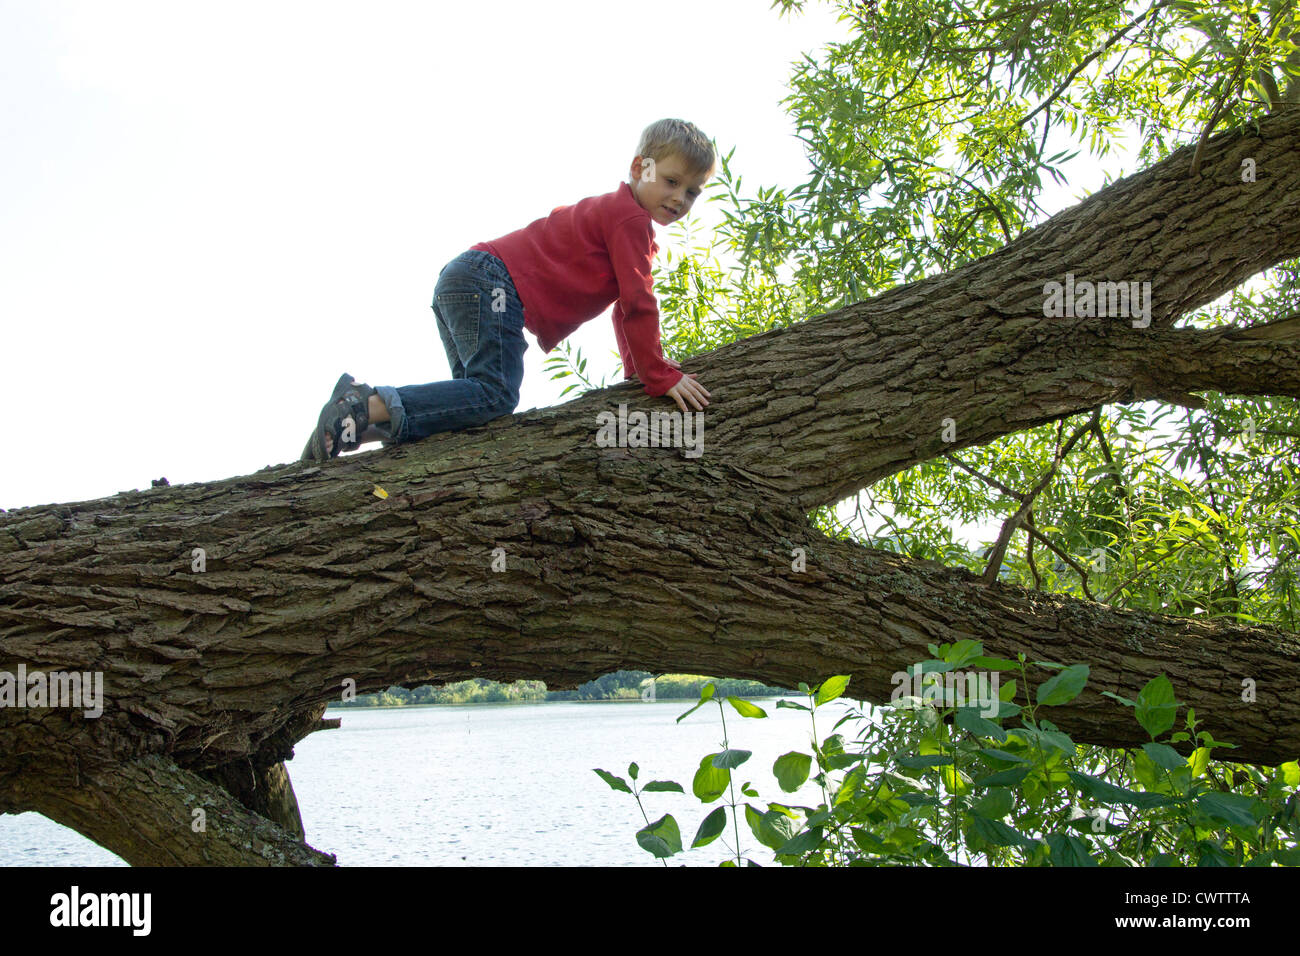 Jeune garçon en rampant le long d'un arbre tombé Banque D'Images